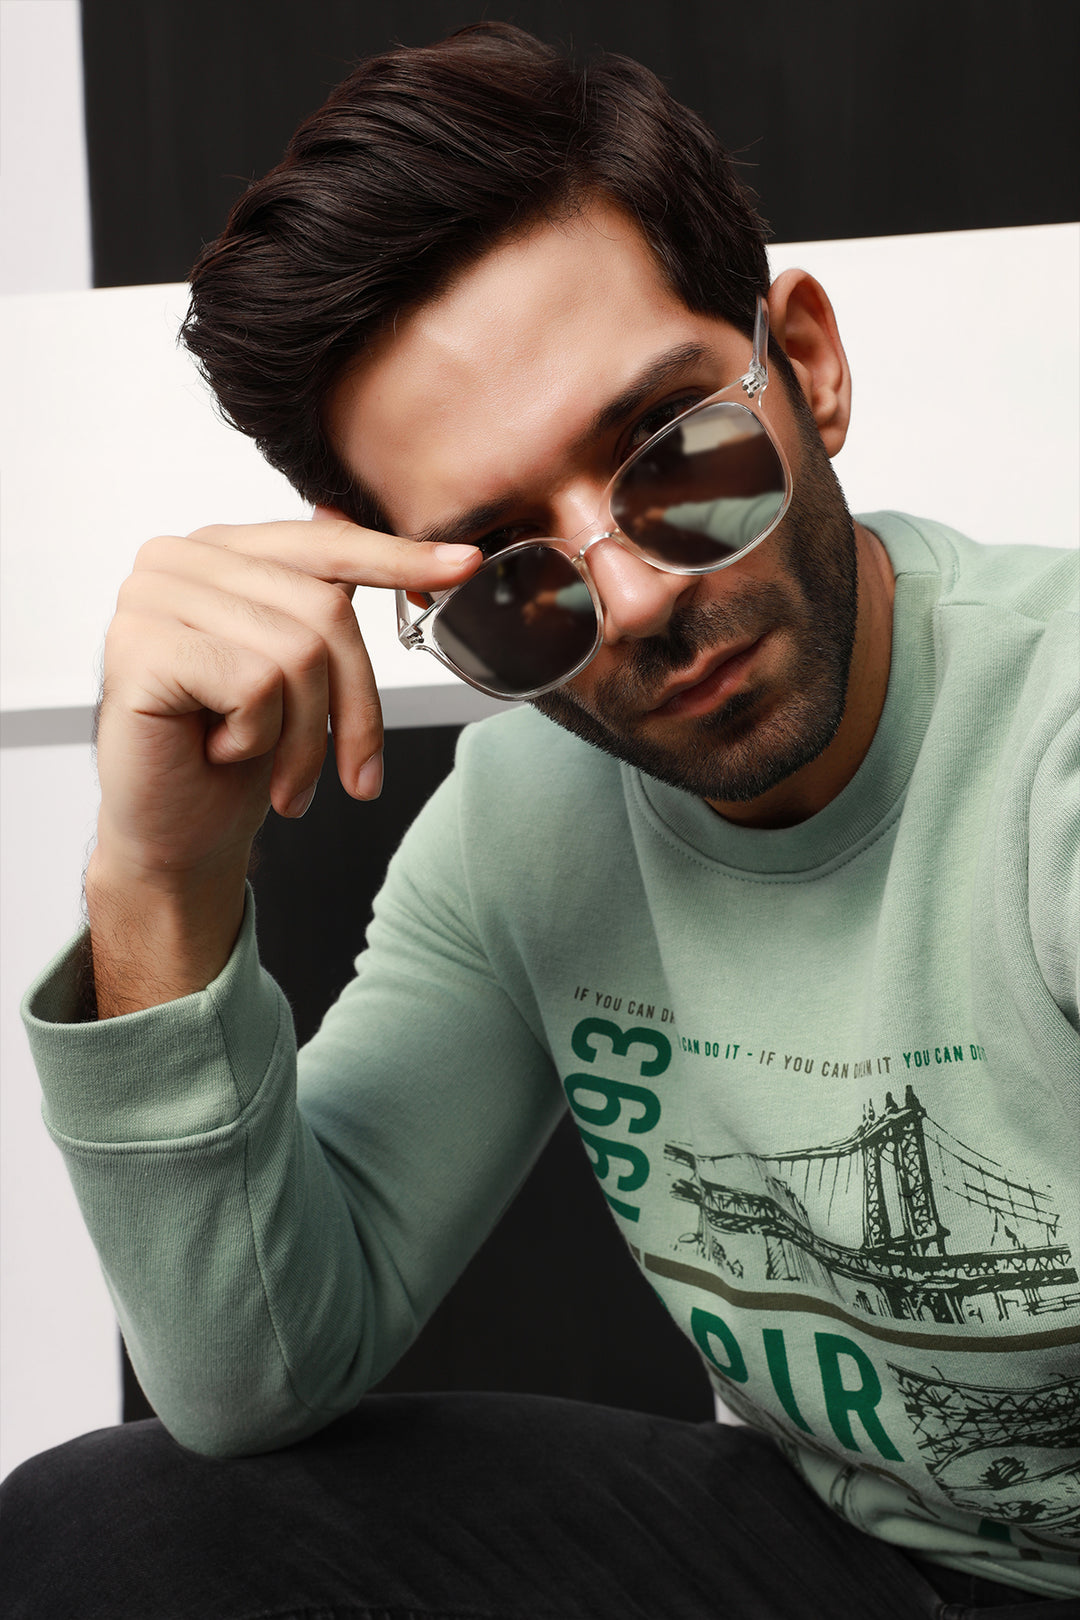 Men's Graphic Sweatshirts Online in Pakistan